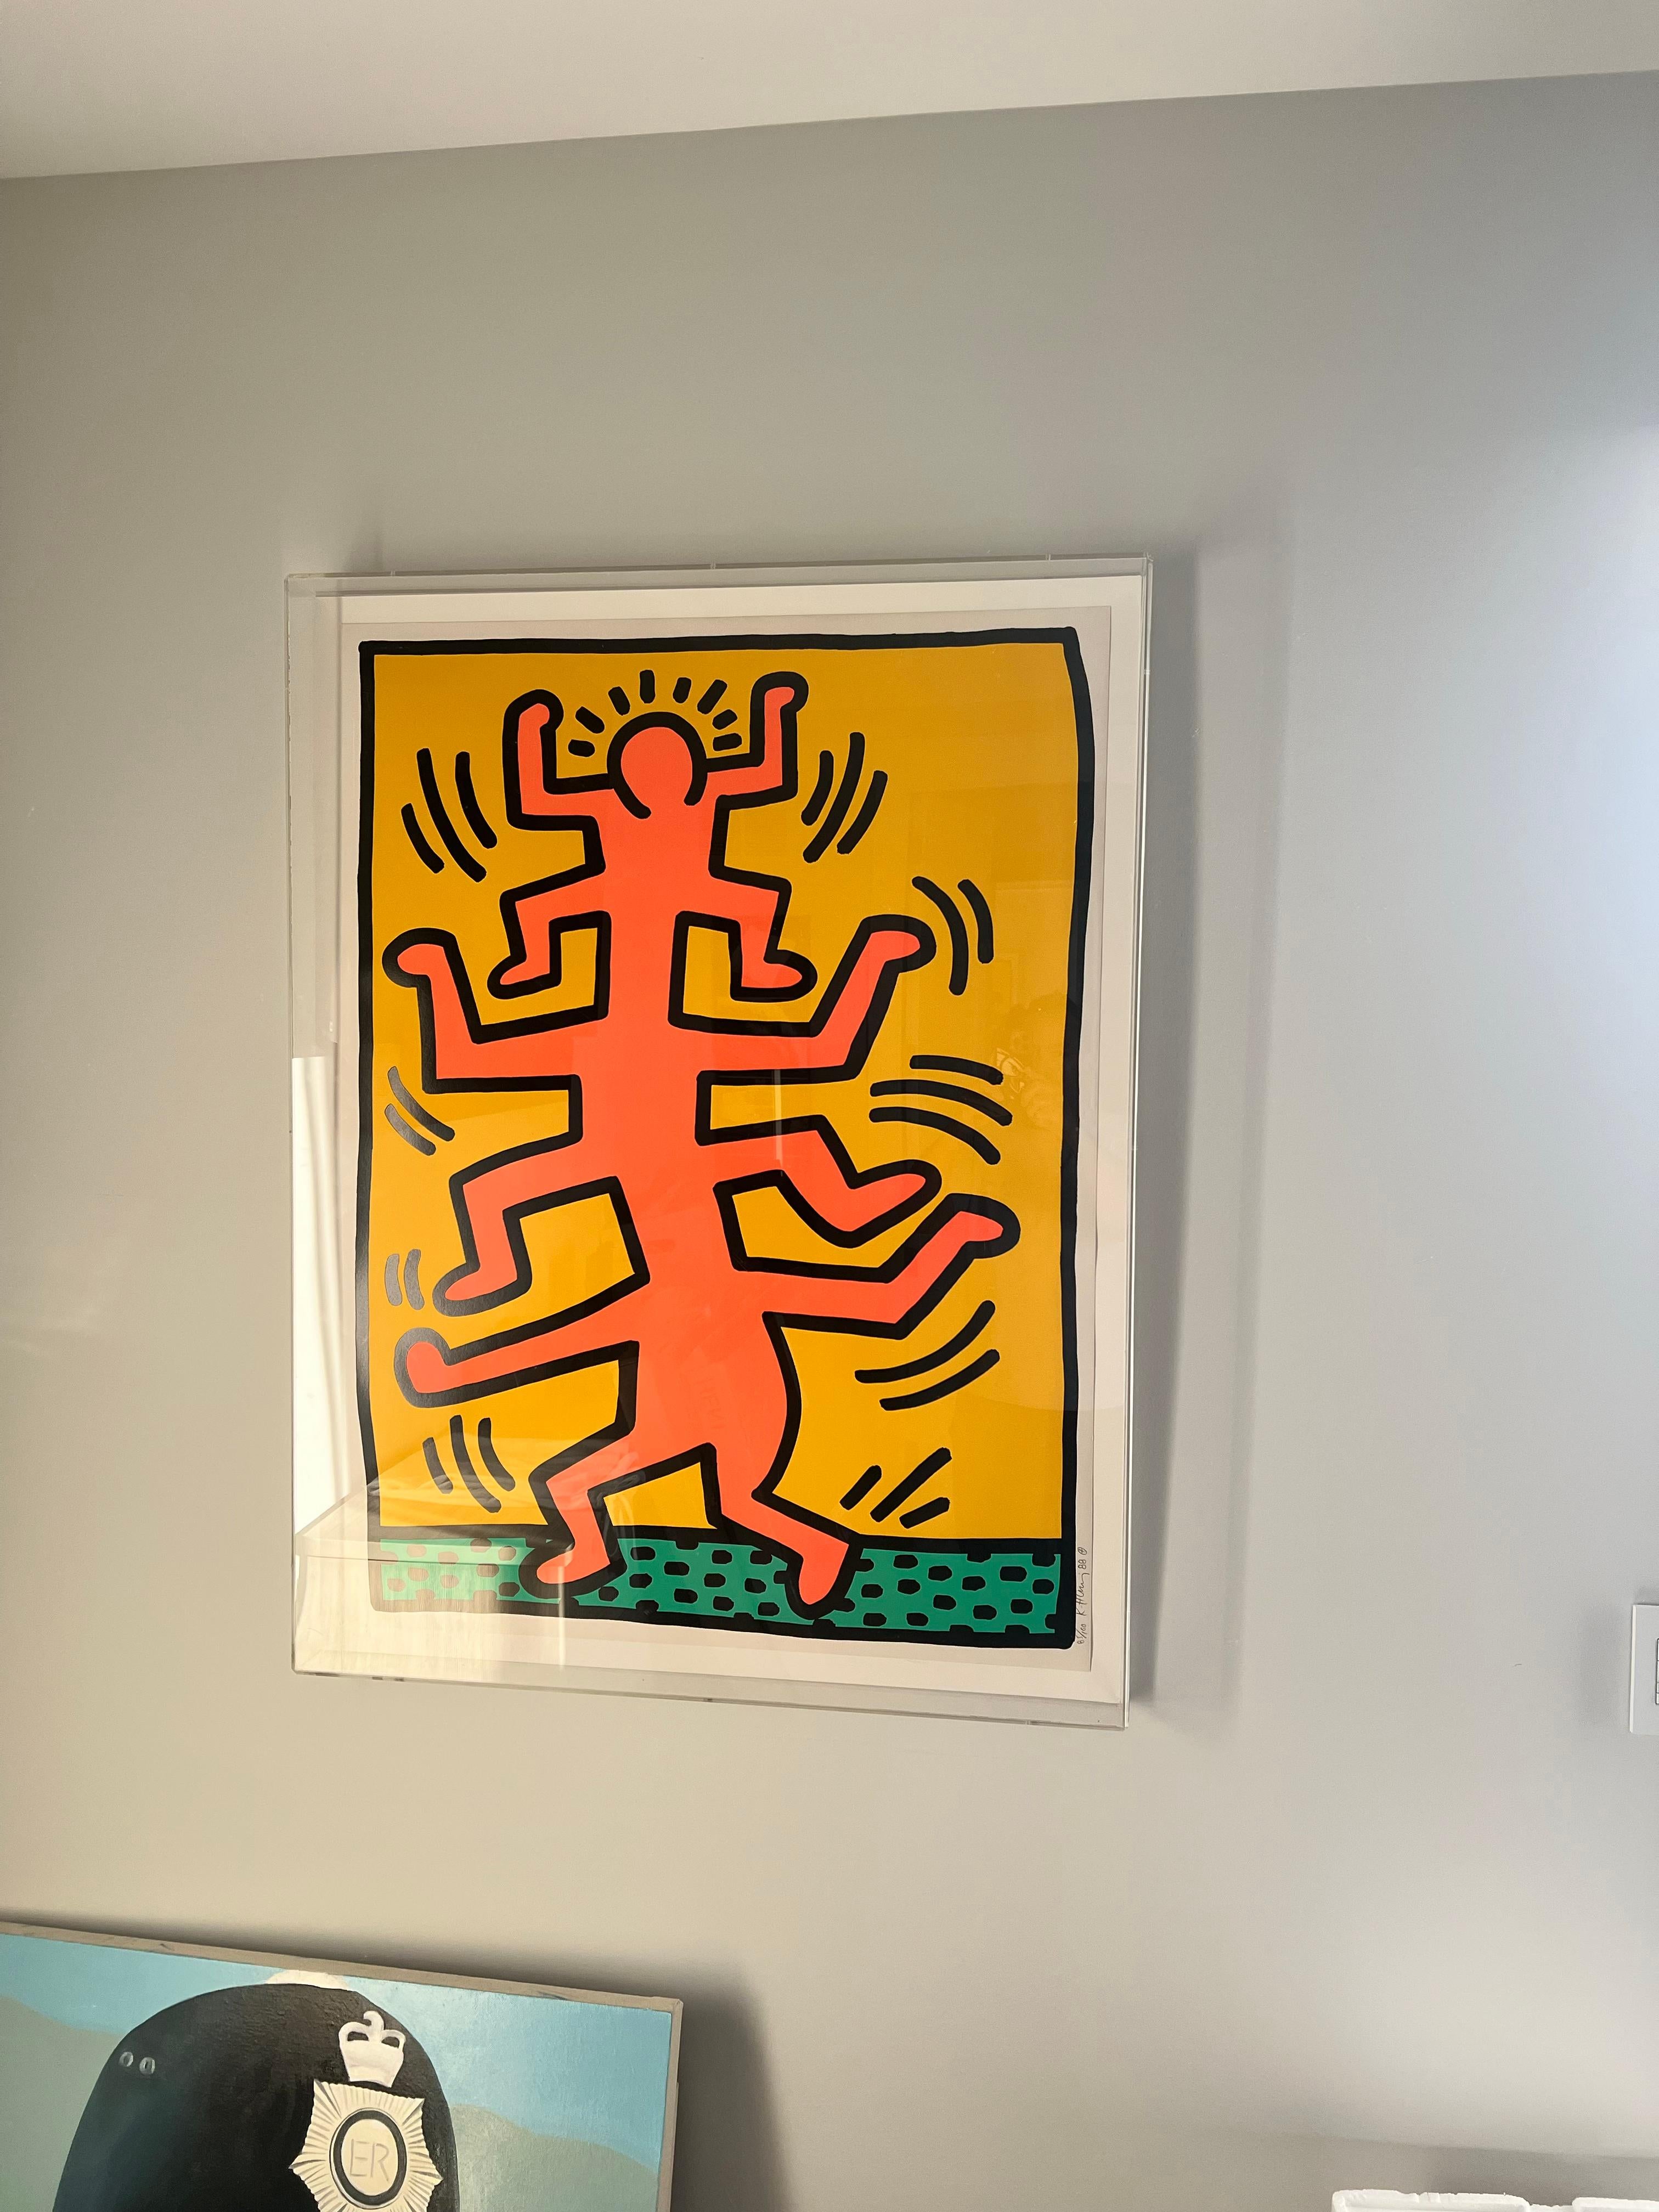 Artiste : Keith Haring 
Titre : I+I 
Taille :  40 1/8 x 29 7/8 in. (101.9 x 75.9 cm)
Support : Sérigraphie en couleurs, sur Lenox Museum Board, avec toutes les marges.
Edition : 85 sur 100
Année : 1987
Notes : Taille de l'image : 38 3/4 x 28 3/4 in.